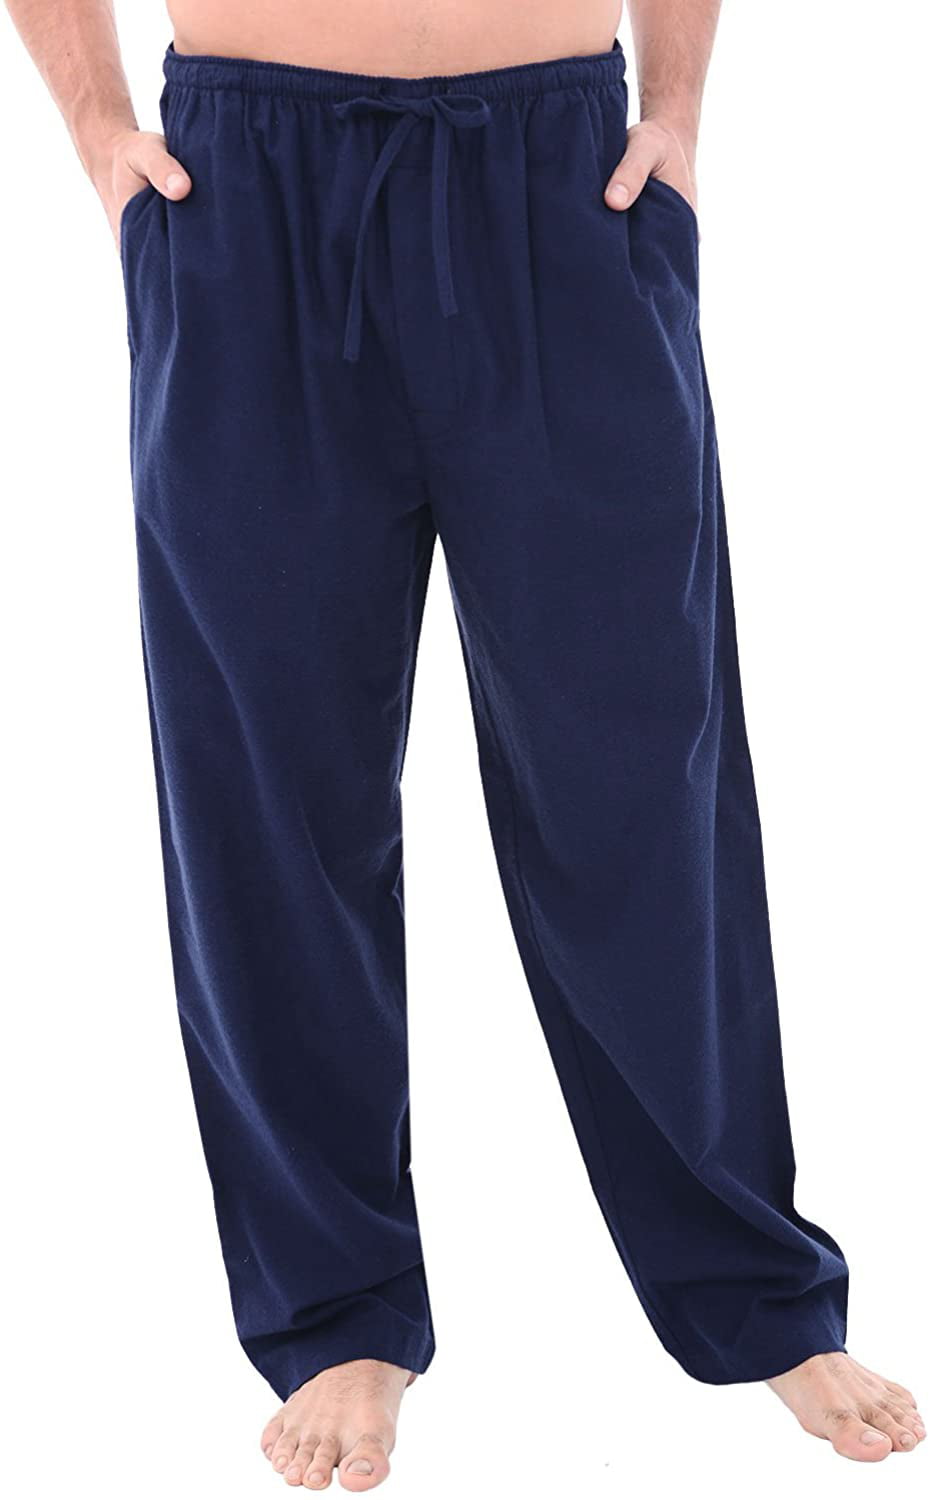 Men's Lightweight Flannel Pajama Pants, Long Plaid Cotton Pj Bottoms ...